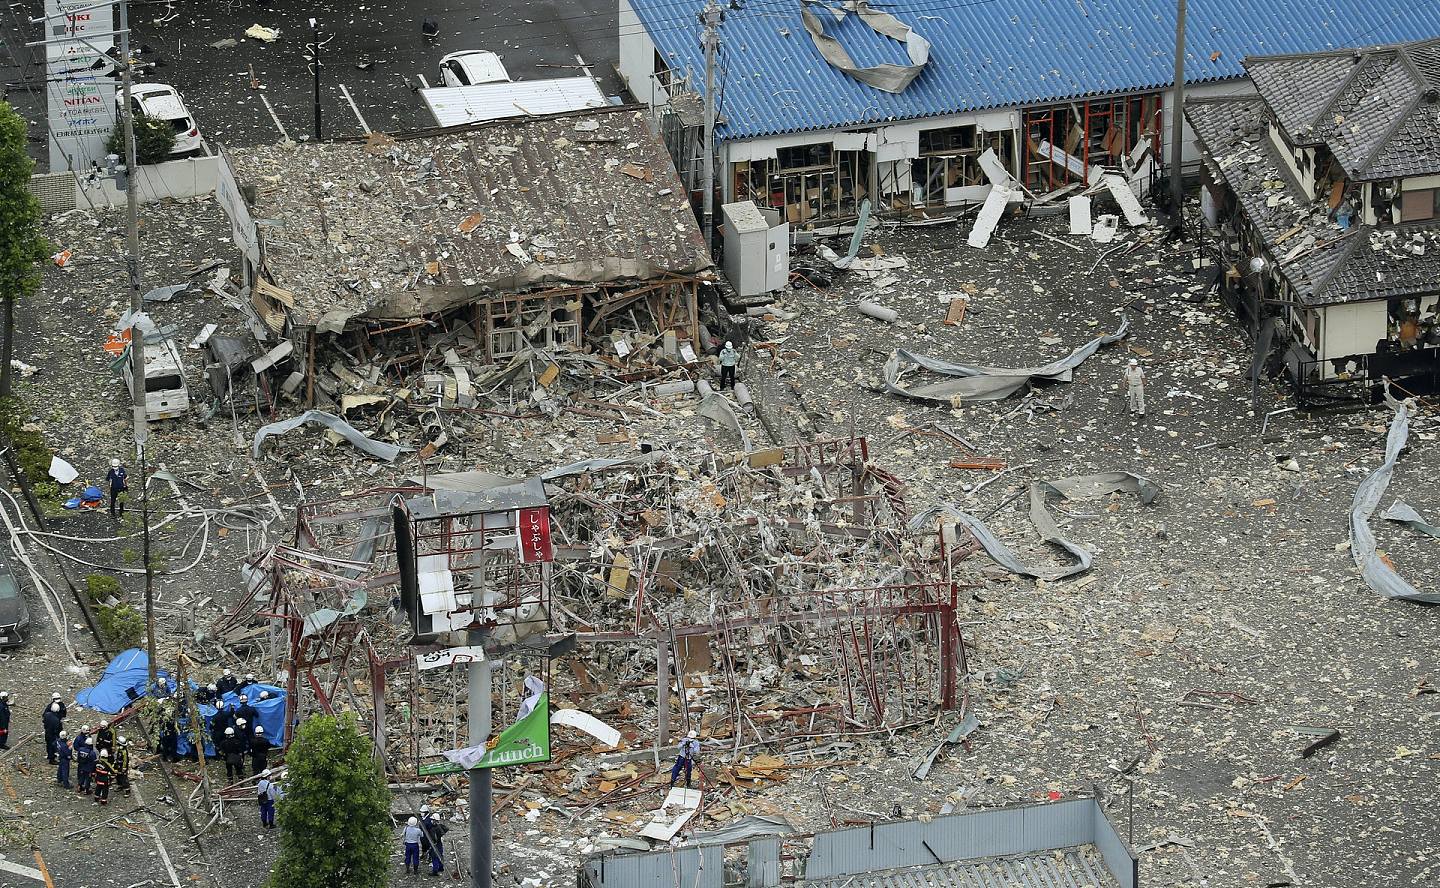 福岛爆炸：福岛县一间火锅店7月30日上午发生爆炸，至少1死18伤。 可见爆炸威力强大，餐厅及附近建筑严重损毁。 （AP）